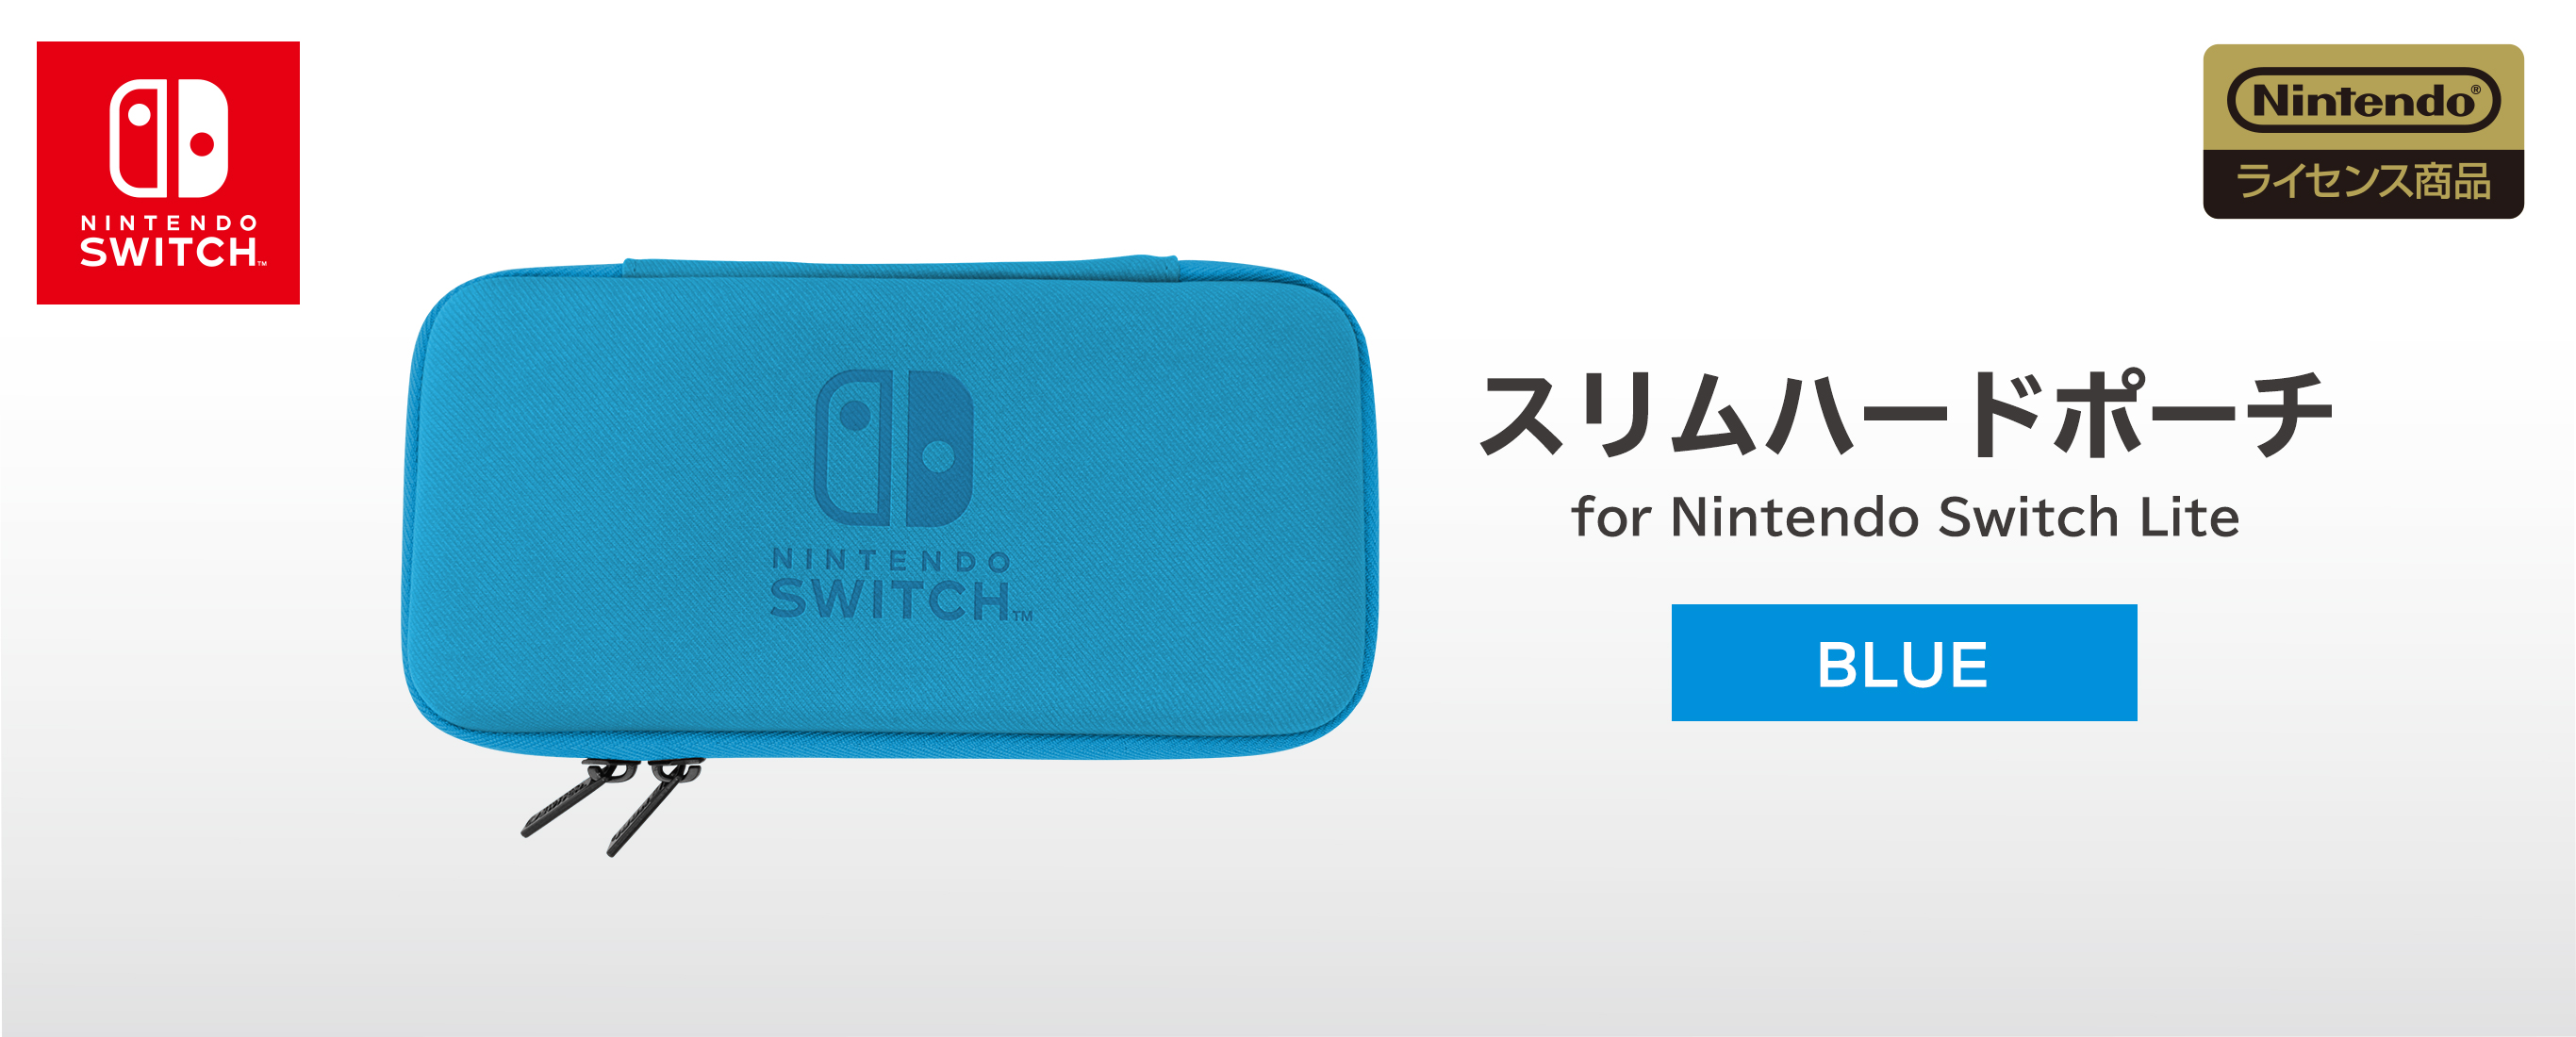 株式会社 Hori スリムハードポーチ For Nintendo Switch Lite ブルー